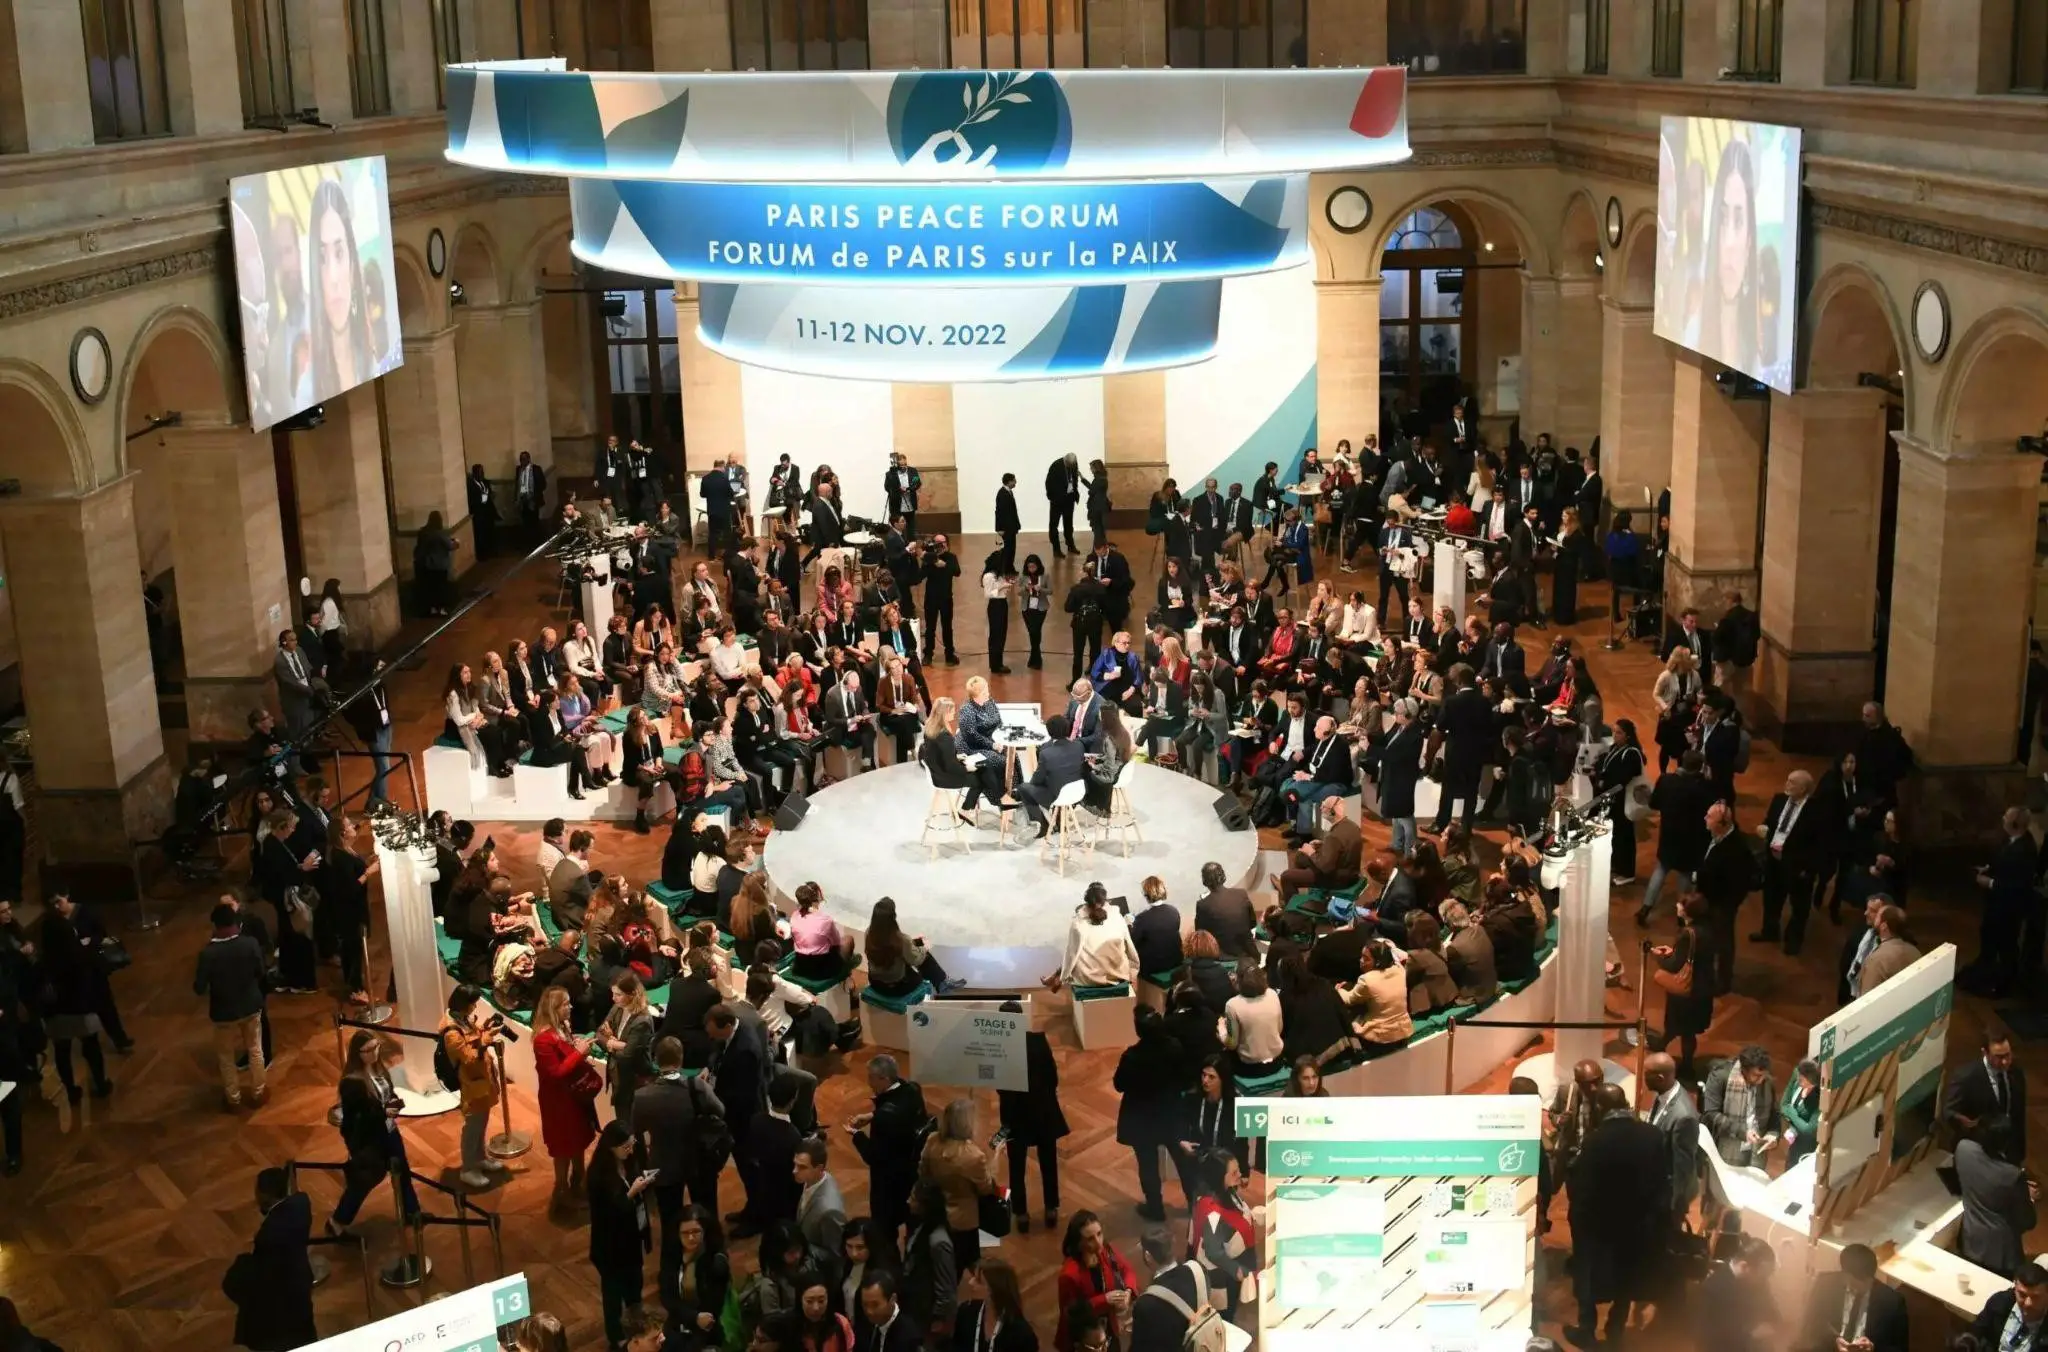 Forum de Paris sur la Paix, novembre 2022. Photo : parispeaceforum.org